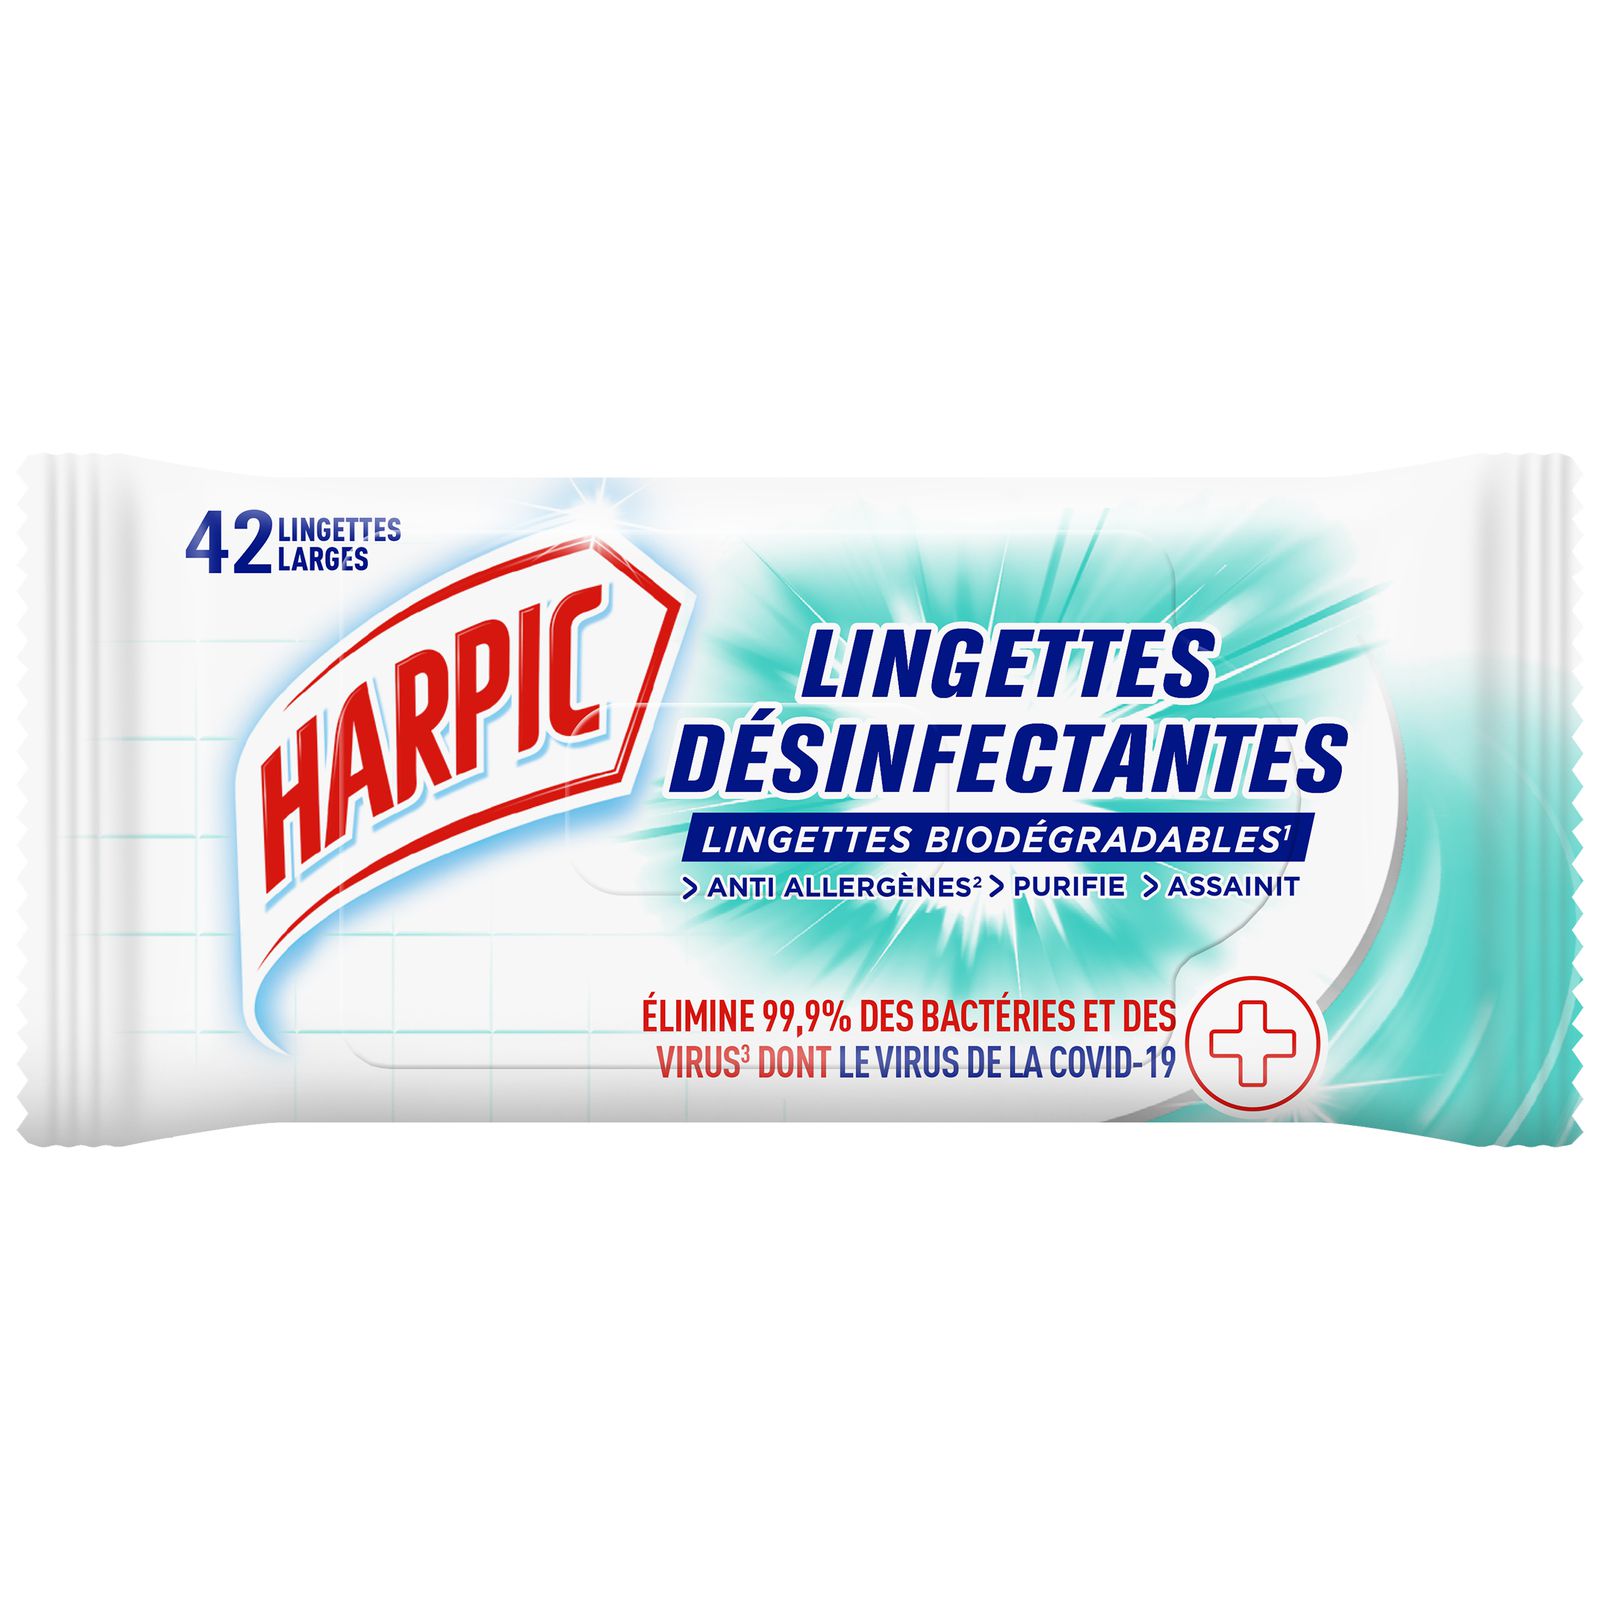 Lingettes désinfectantes pour WC Harpic sans javel - LD Medical